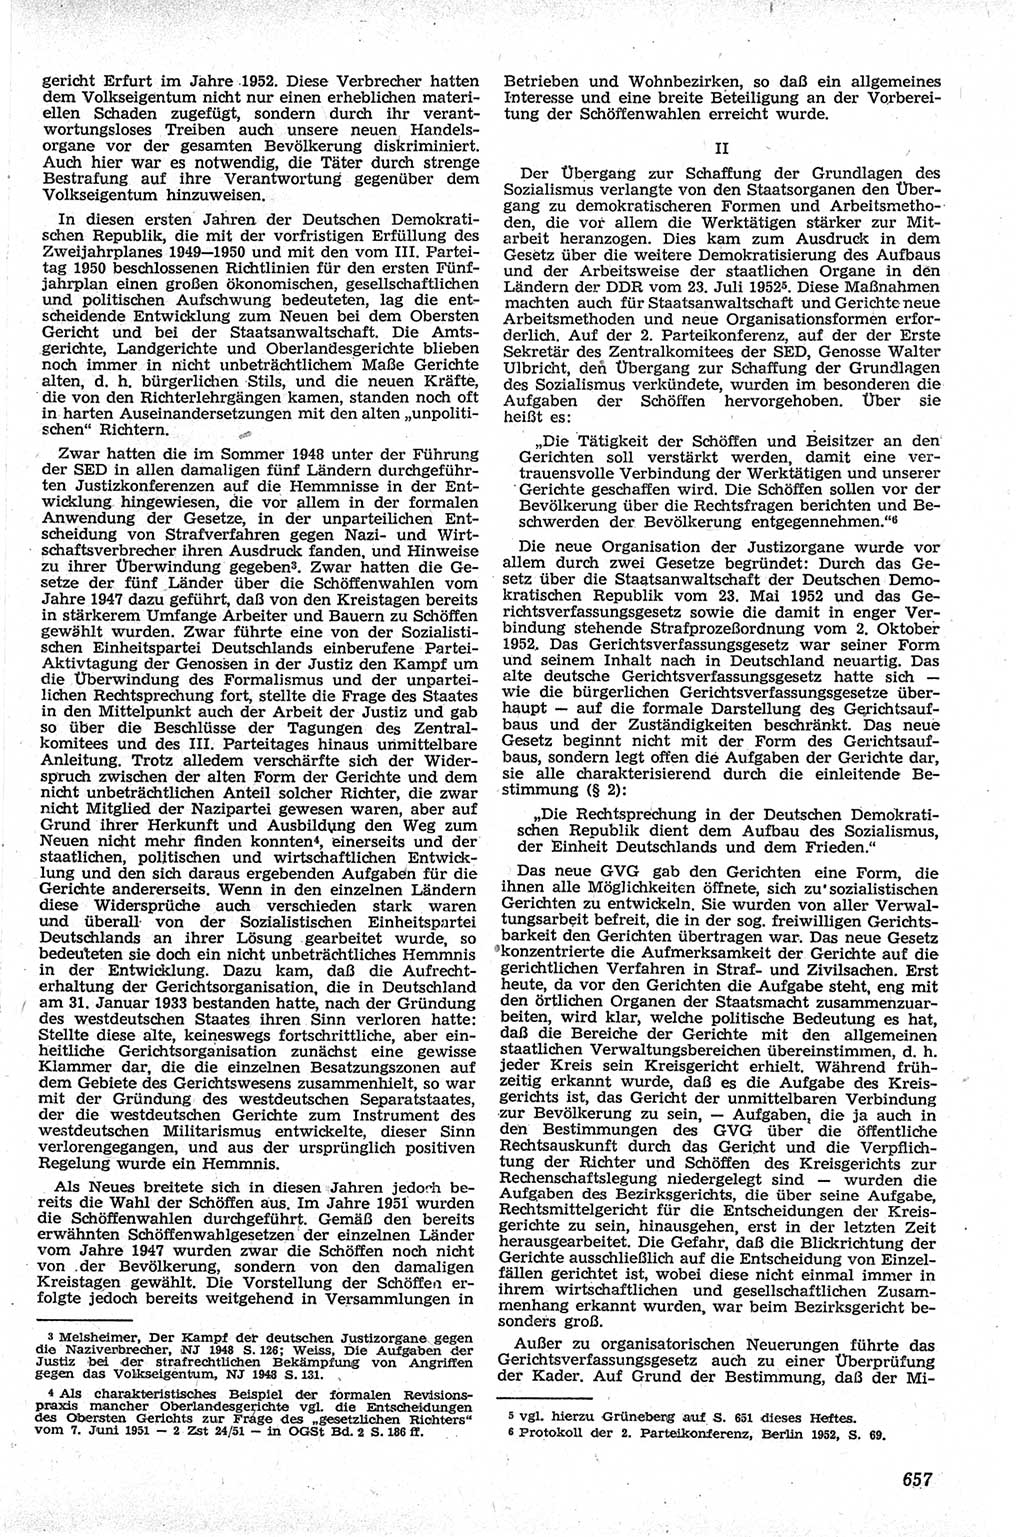 Neue Justiz (NJ), Zeitschrift für Recht und Rechtswissenschaft [Deutsche Demokratische Republik (DDR)], 13. Jahrgang 1959, Seite 657 (NJ DDR 1959, S. 657)